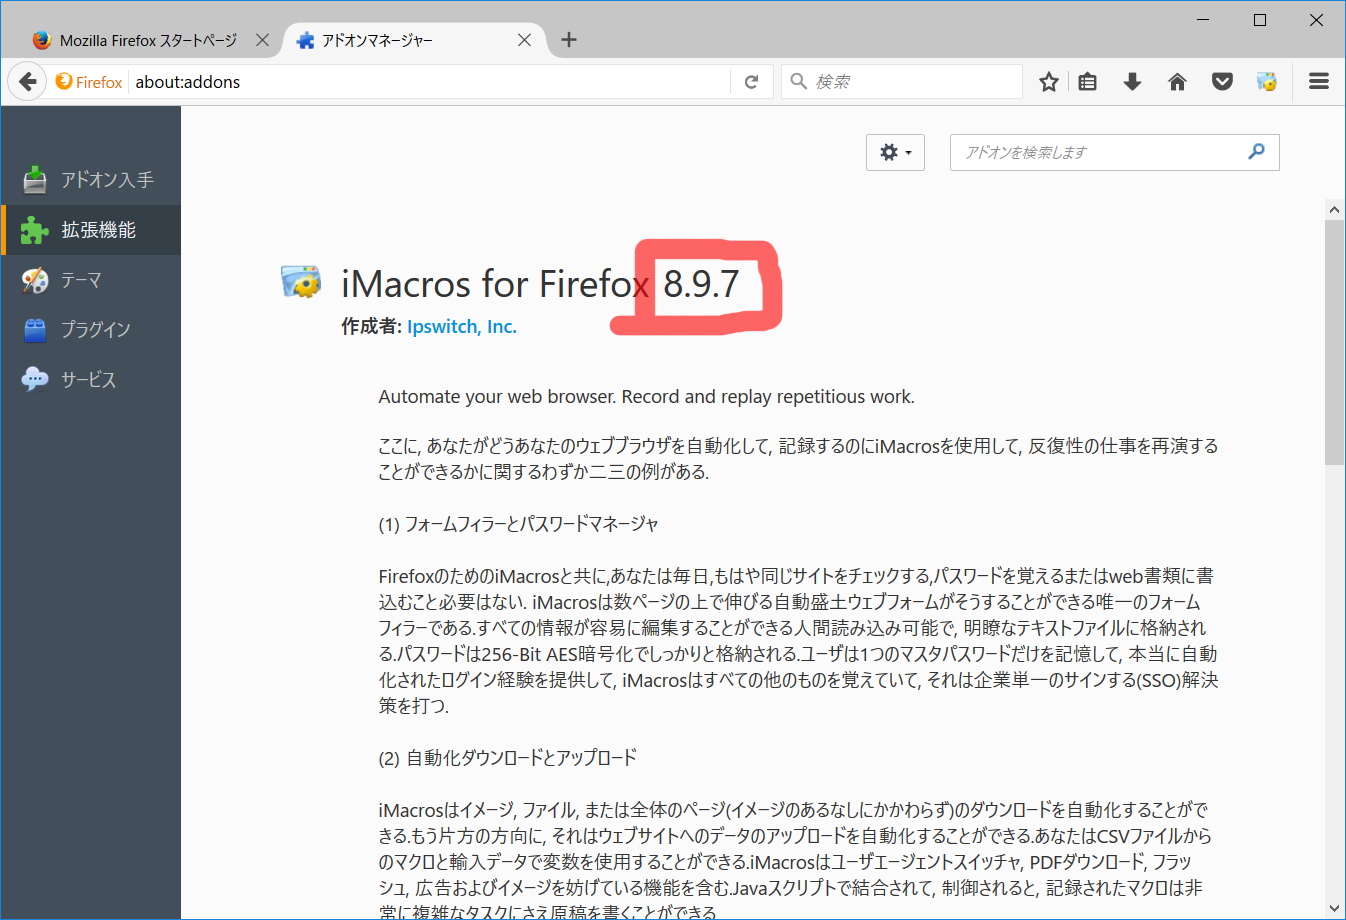 Imacros для тор браузера mega tor browser для windows скачать 12345 mega